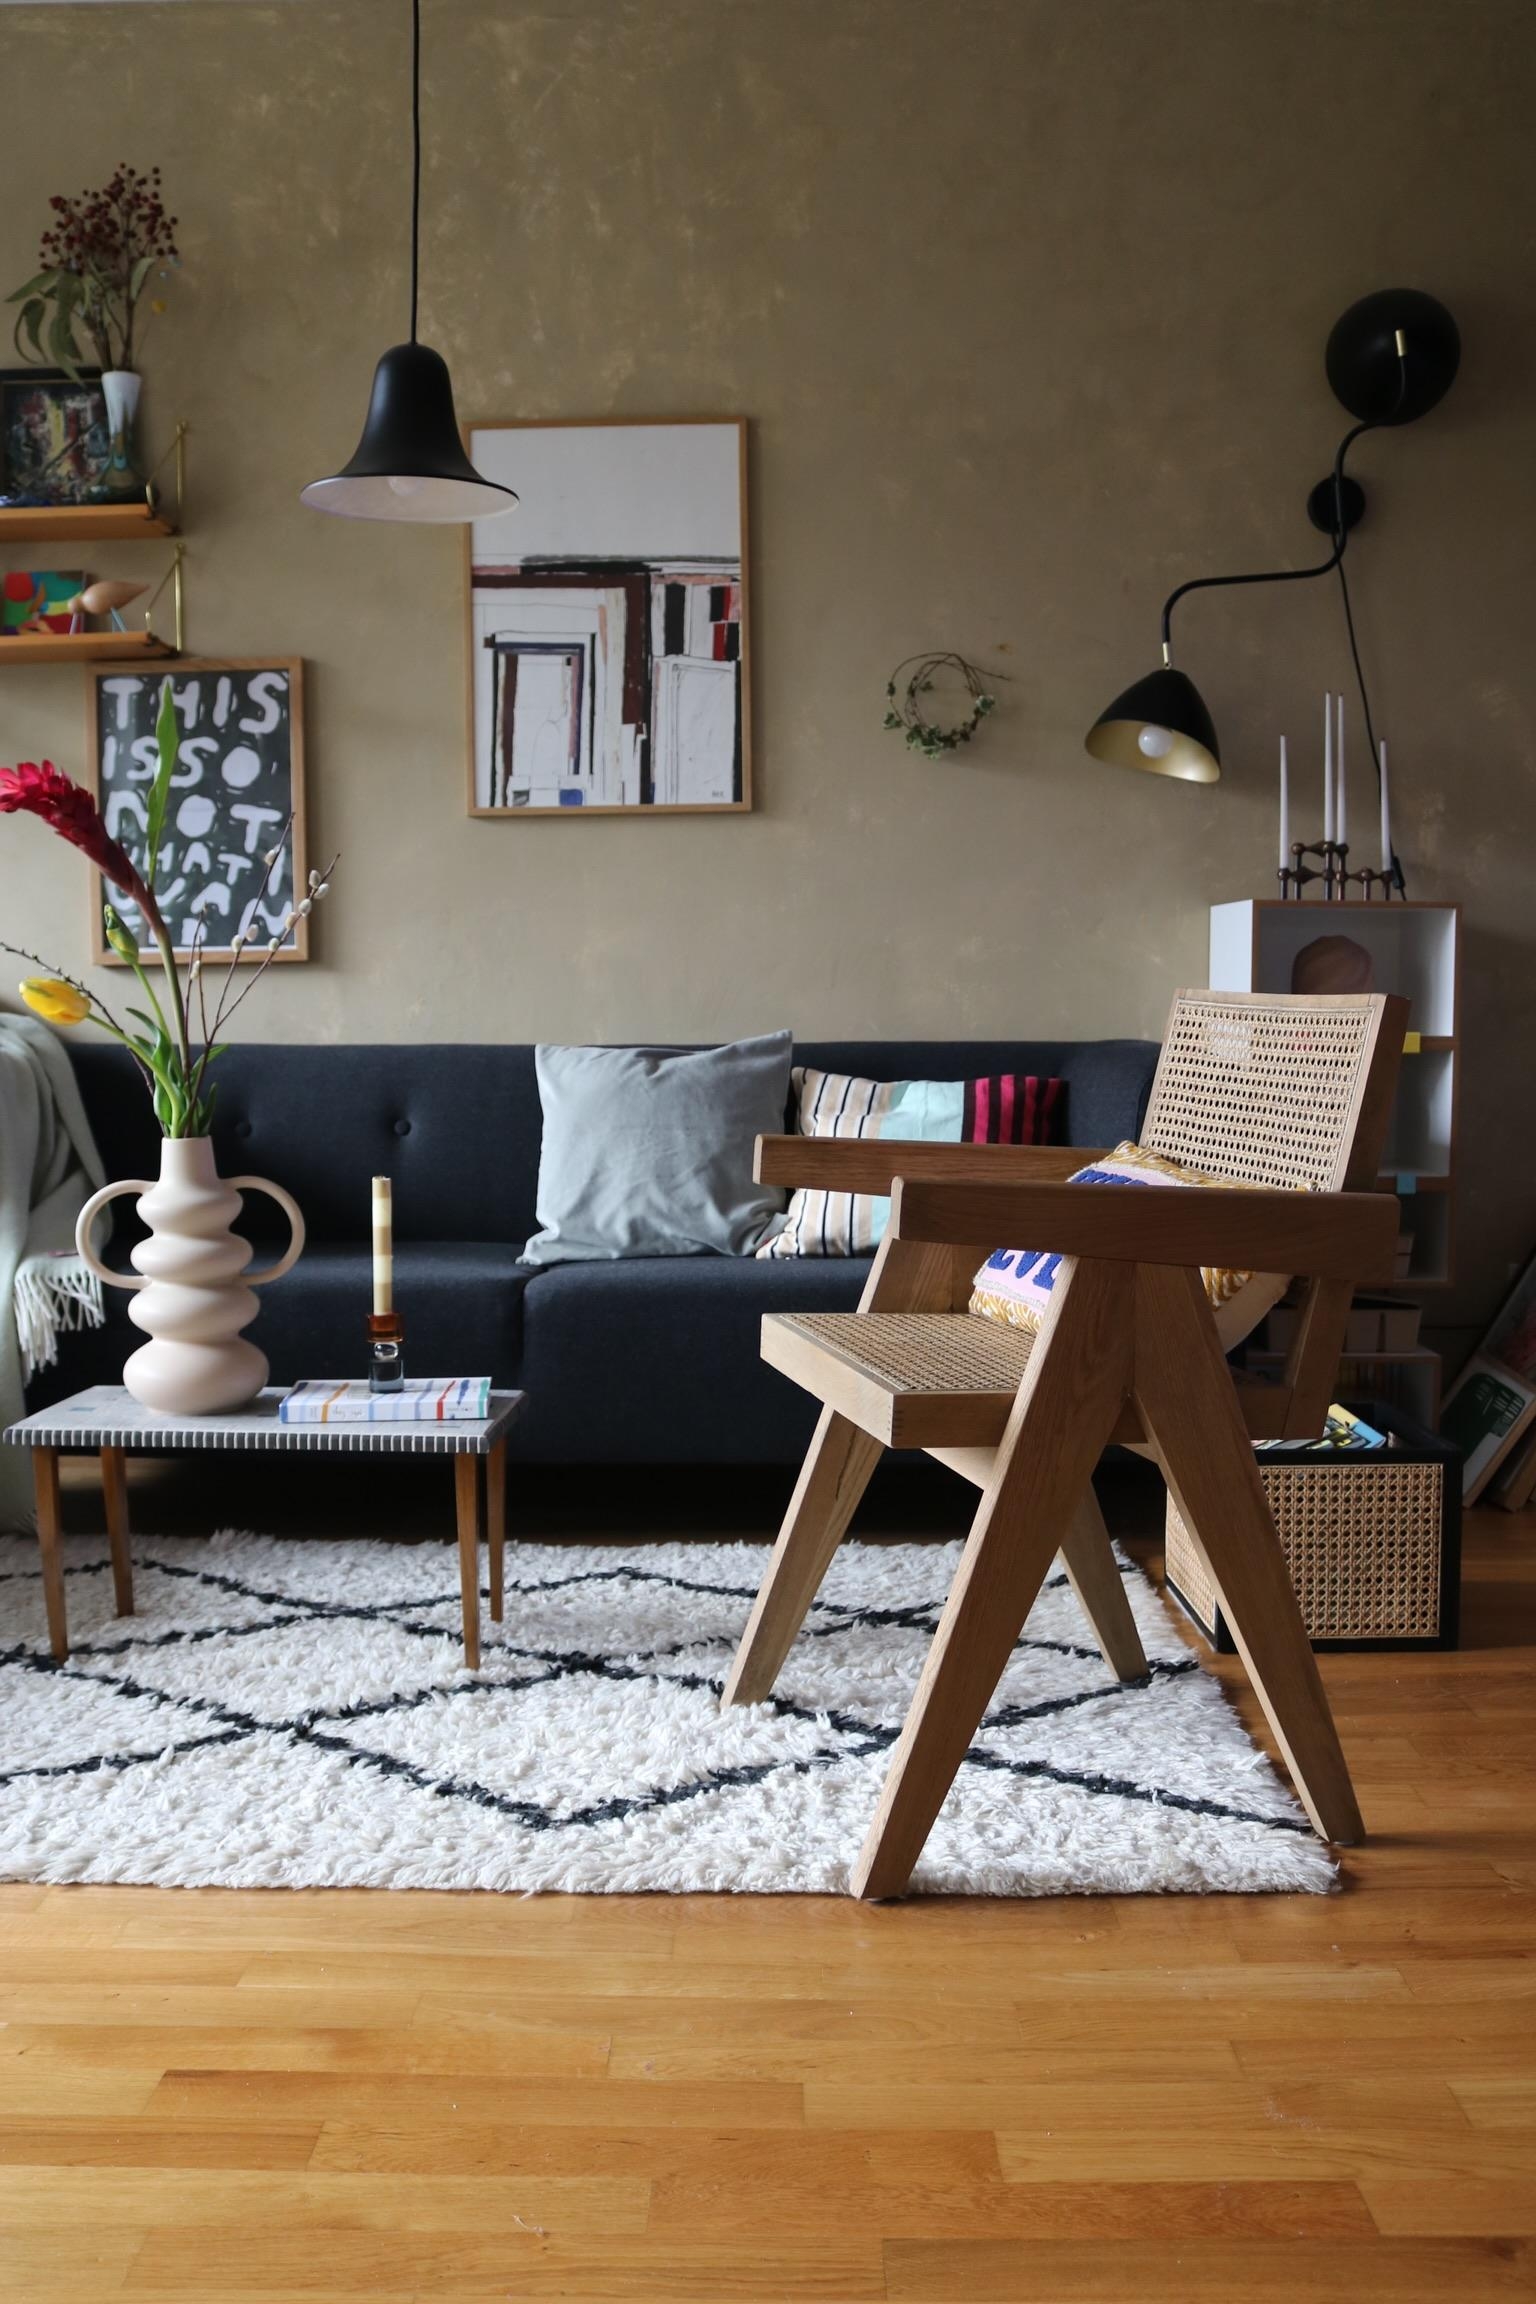 #interior #couchstyle #wandgestaltung #wohnzimmer #deko #vasenliebe